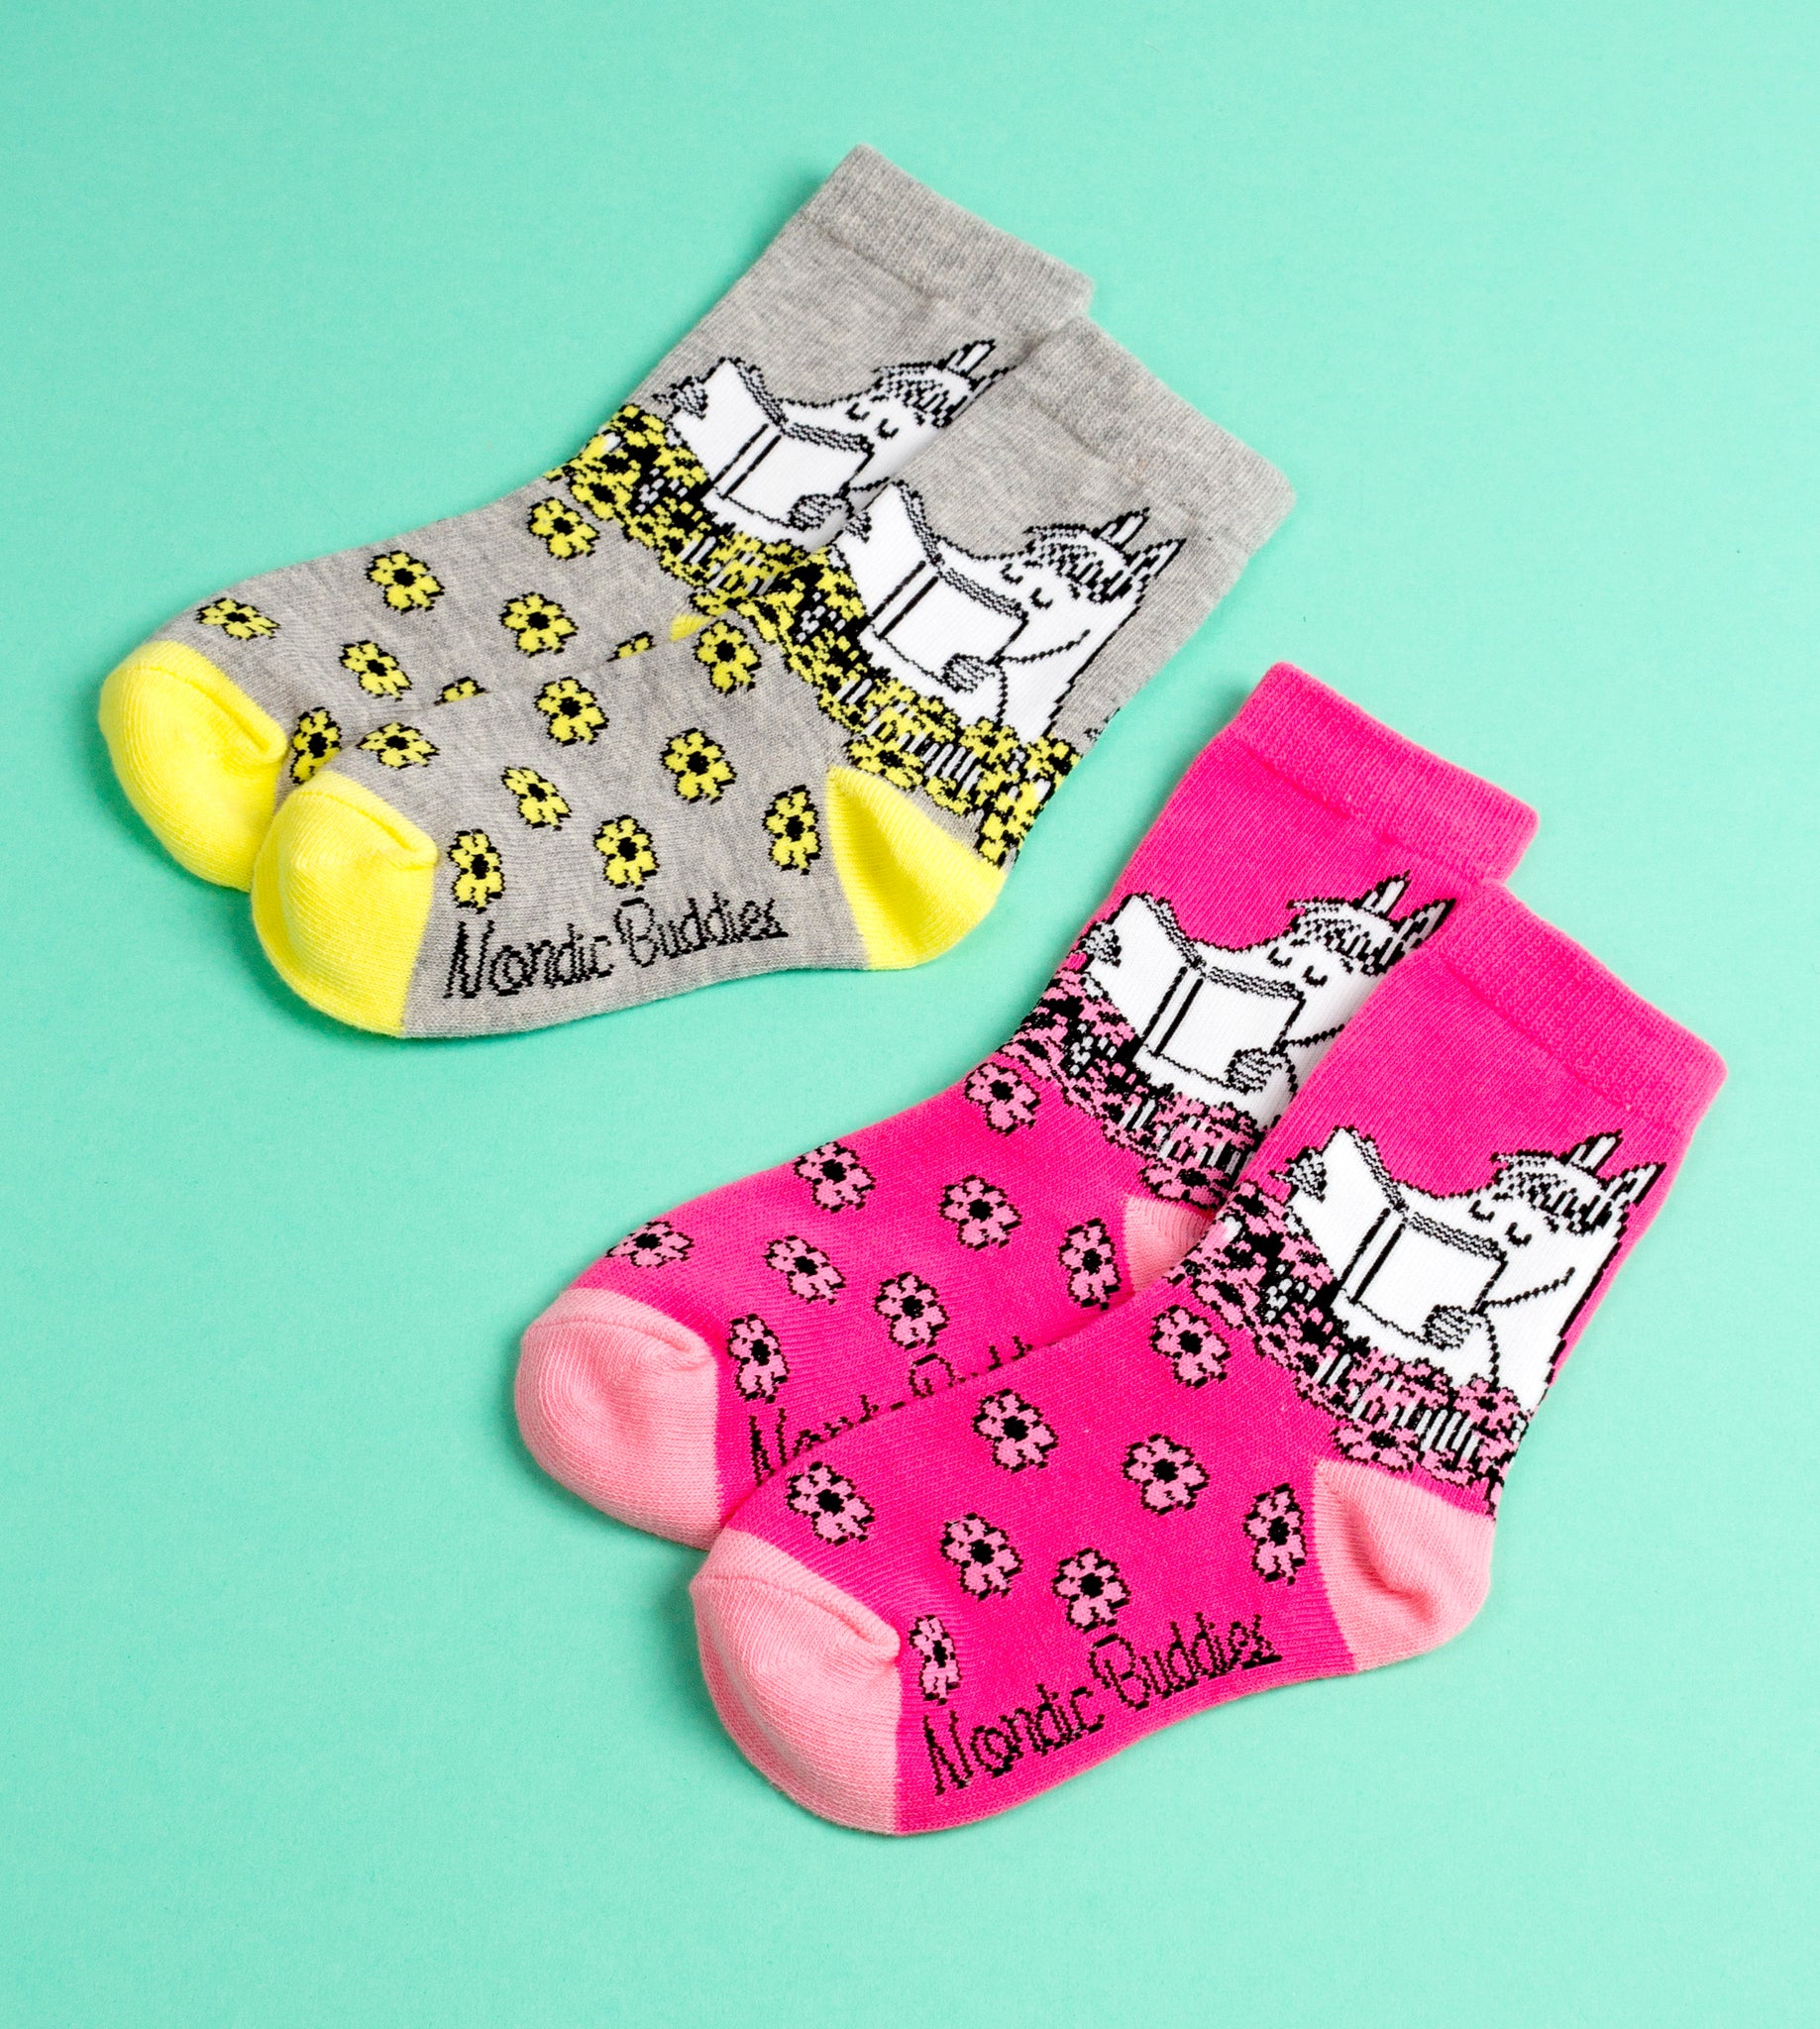 Moomin Kids Socks Douple Pack Grey Pink Snorkmaiden | Muumi Lasten Sukat Tuplapakkaus Pinkki Harmaa Niiskuneiti